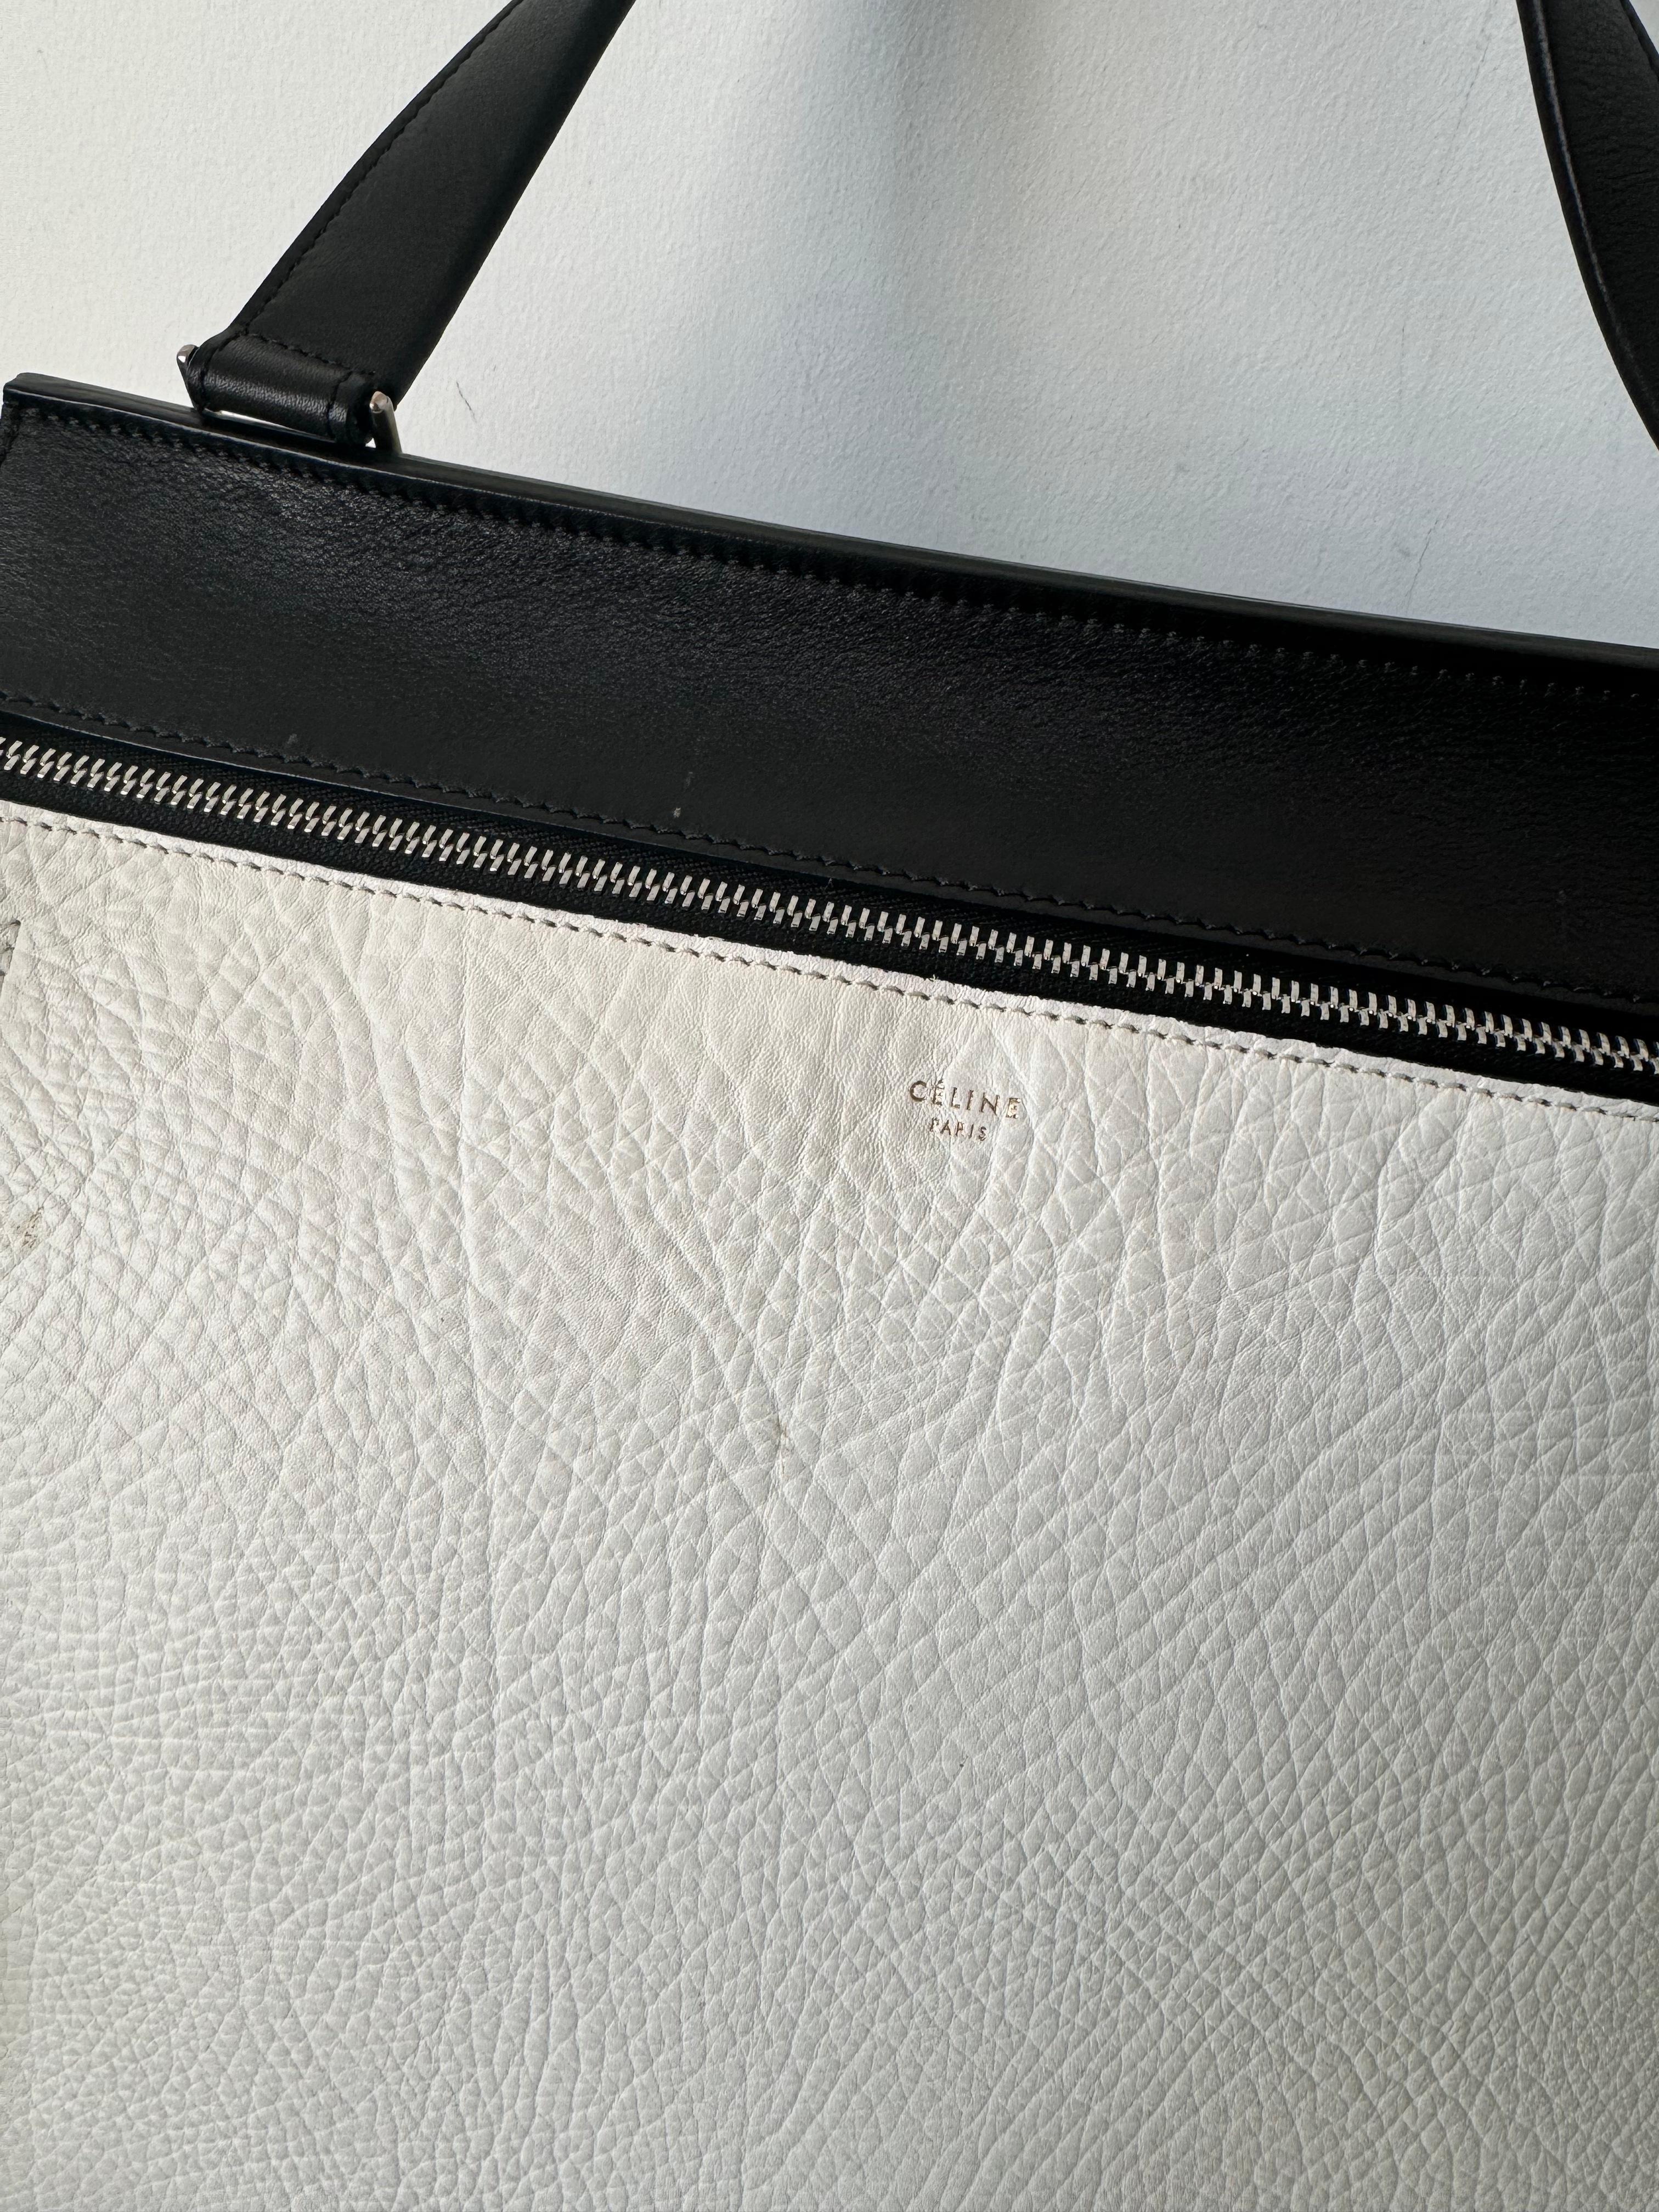 Die gebrauchte Celine Black/White 2 Tone Medium Edge Bag, entworfen von Phoebe Philo, steht für eine raffinierte Mischung aus Modernität und zeitloser Eleganz. Hier finden Sie einen Überblick über diese kultige Tasche:

Design und Stil:
Die Medium